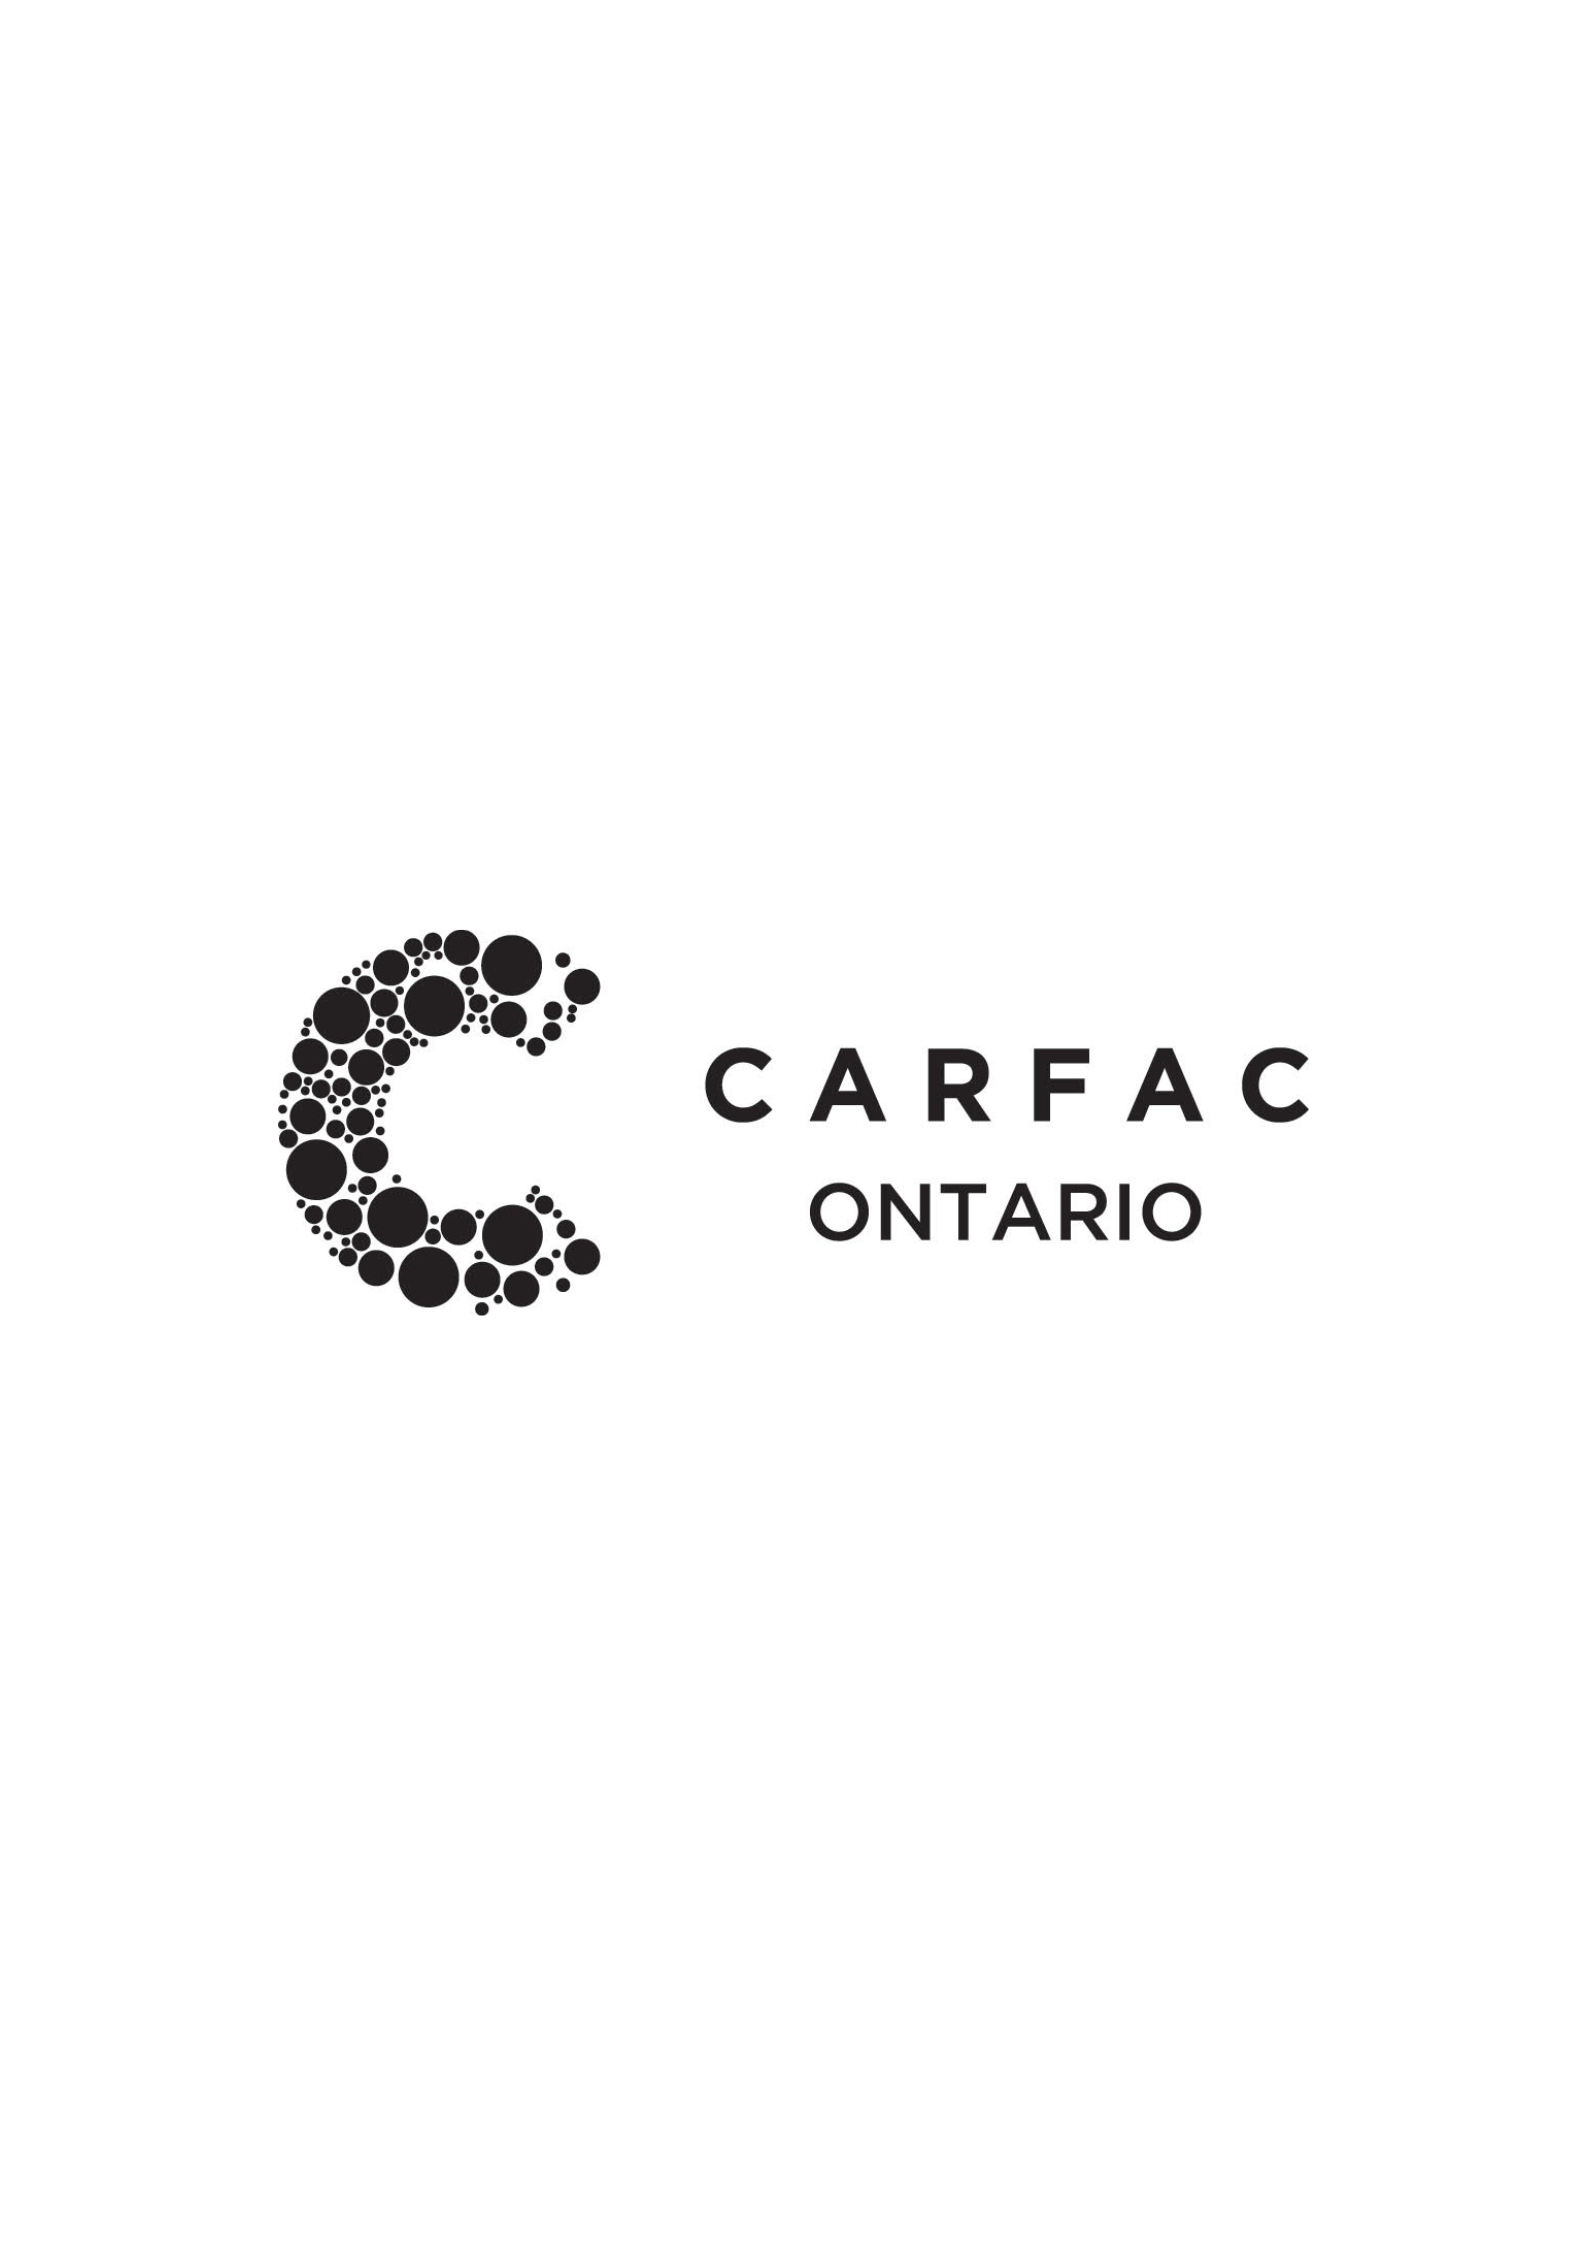 CARFAC Ontario (Toronto, ON)